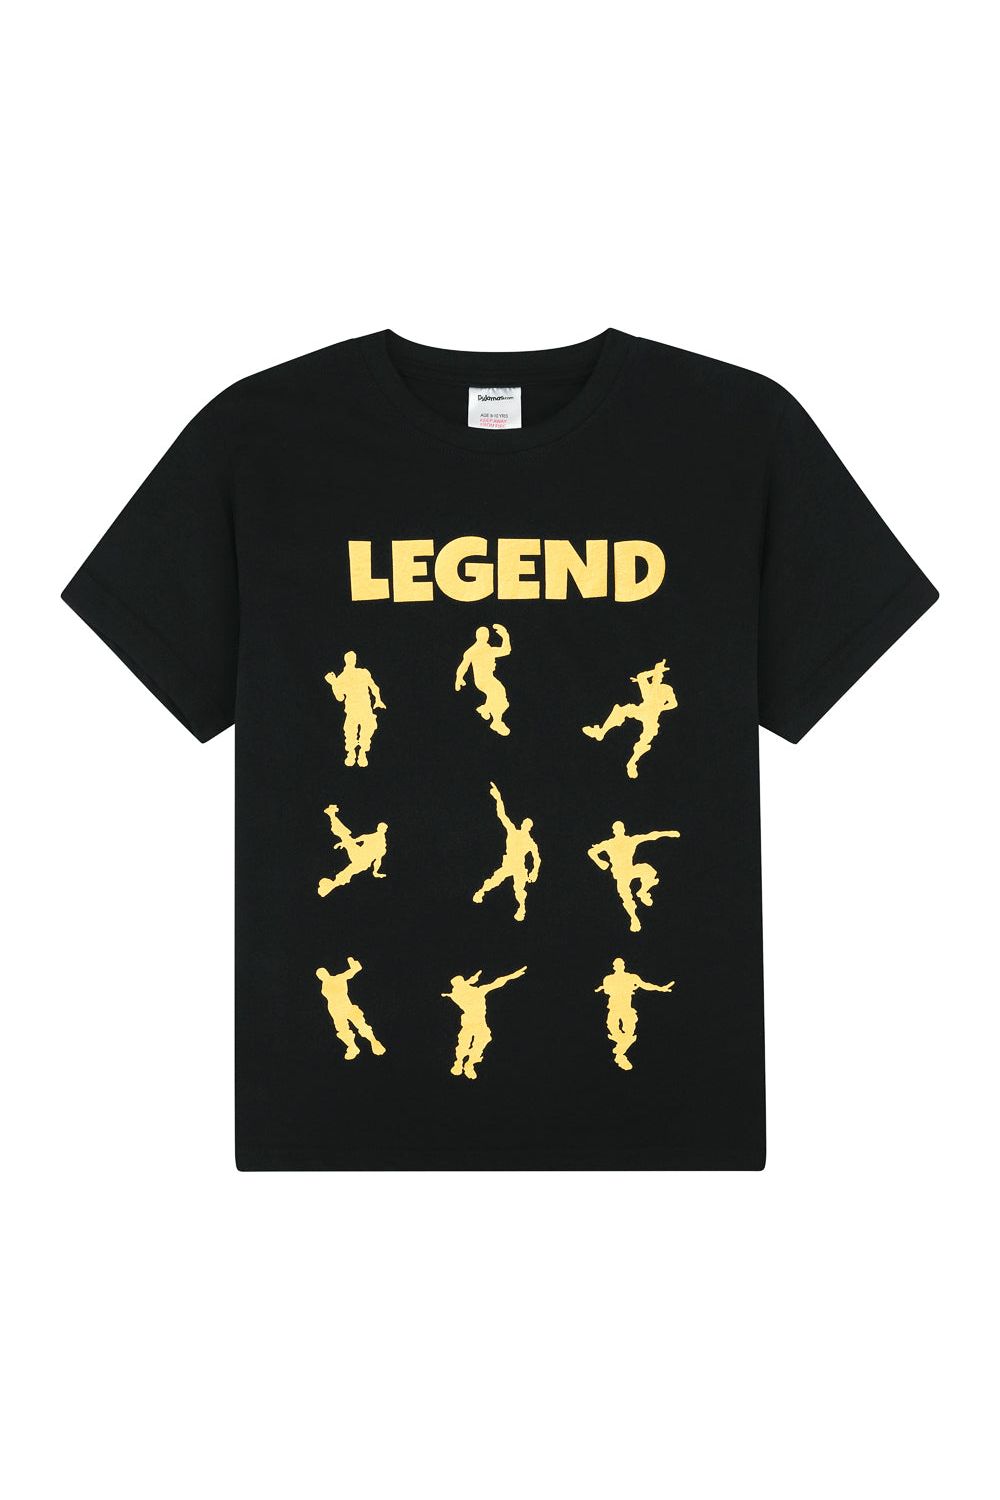 Legend Emote Dance Gaming Gold Short Pyjamas - Pyjamas.com